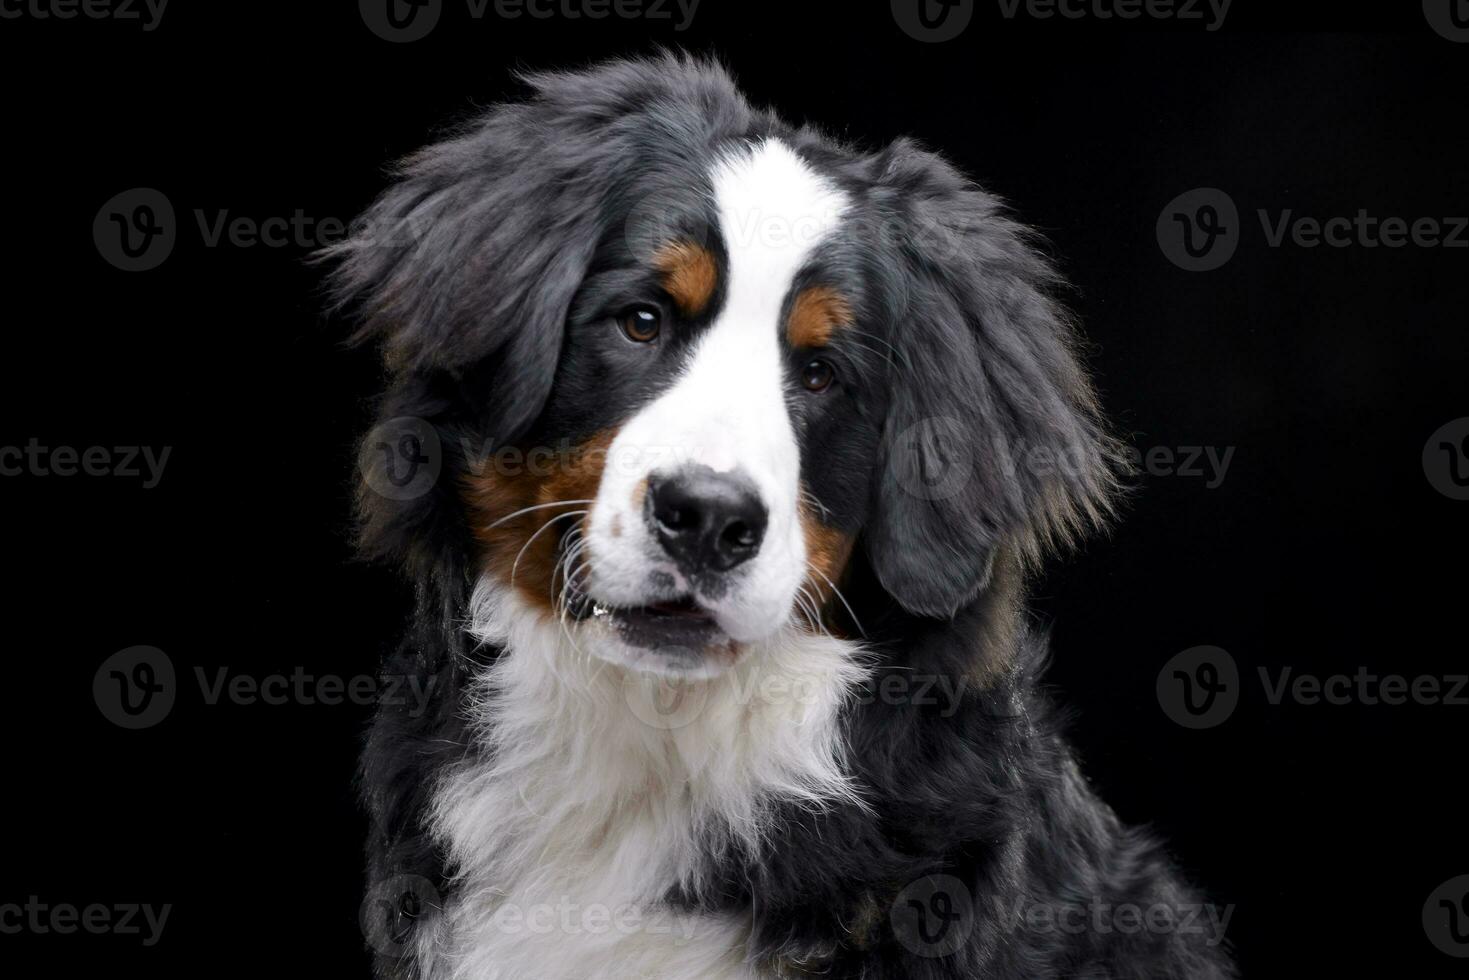 retrato do a adorável Bernese montanha cachorro foto